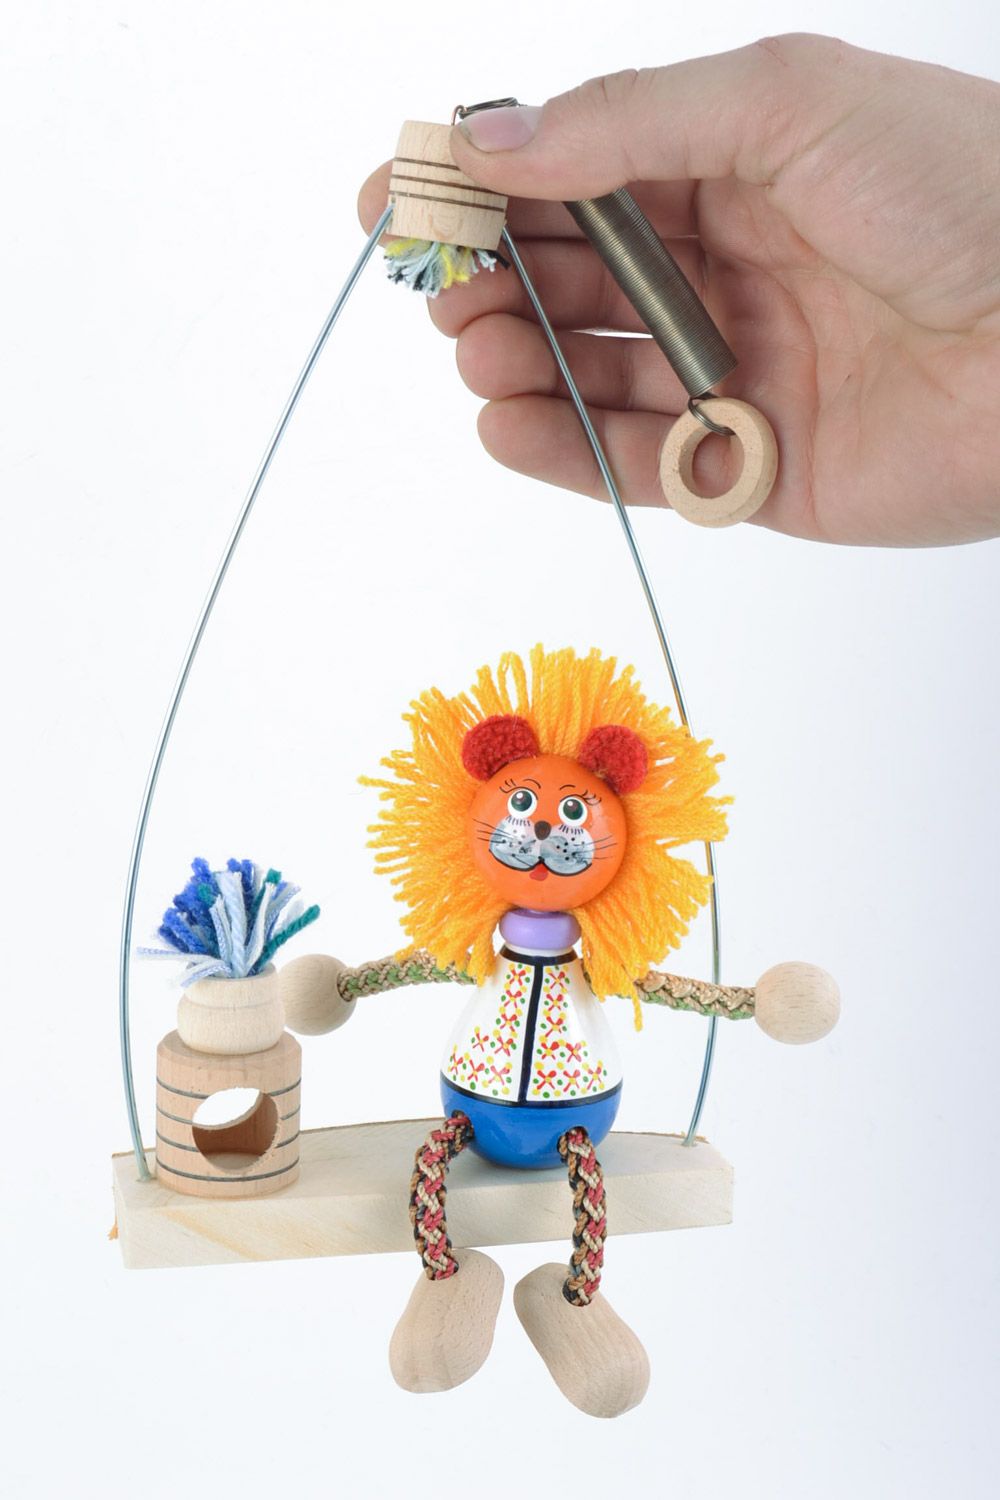 Handmade Öko Spielzeug Löwe mit Schaukel aus Holz bemalt für Geschenk foto 1